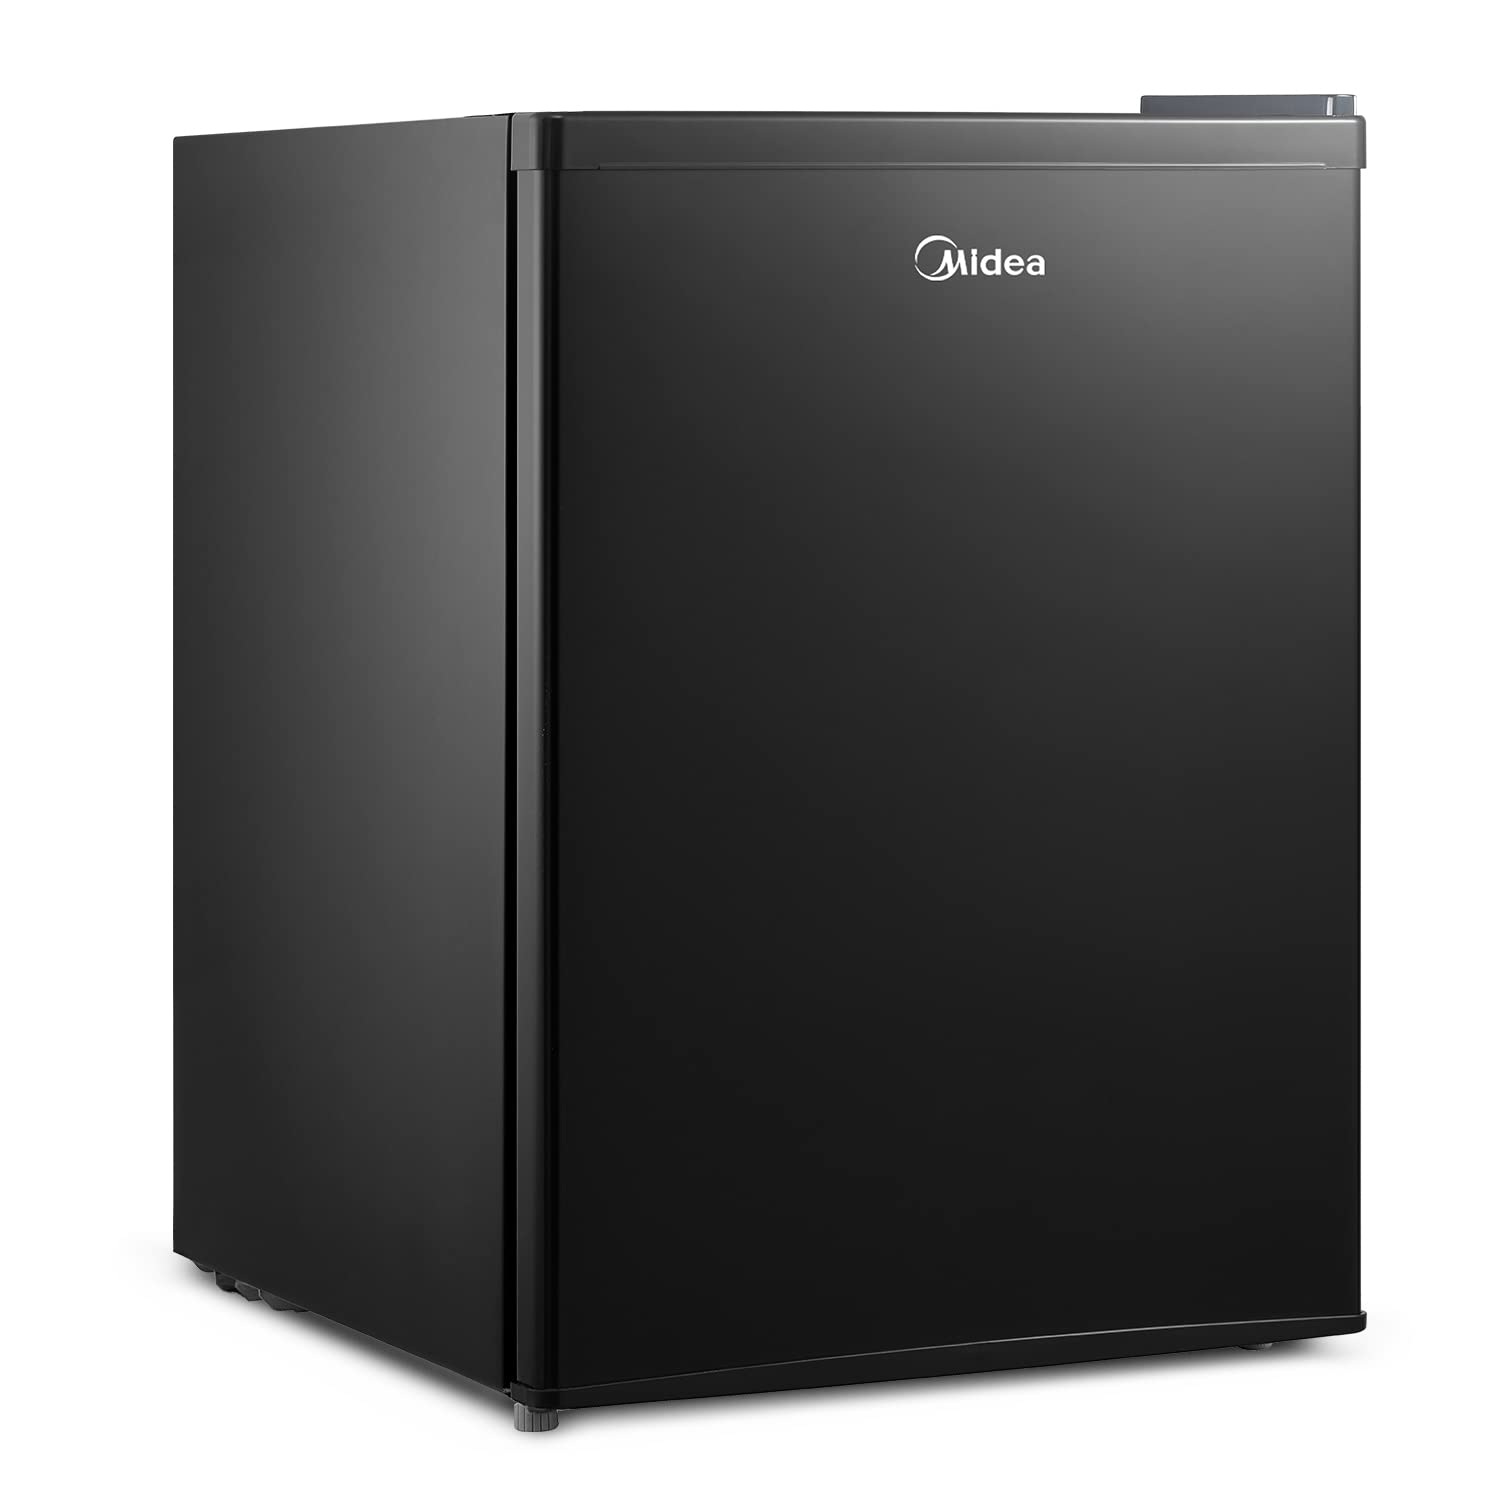 Midea WHS-87LB1 Refrigerator, 2.4 Cubic Feet, Black